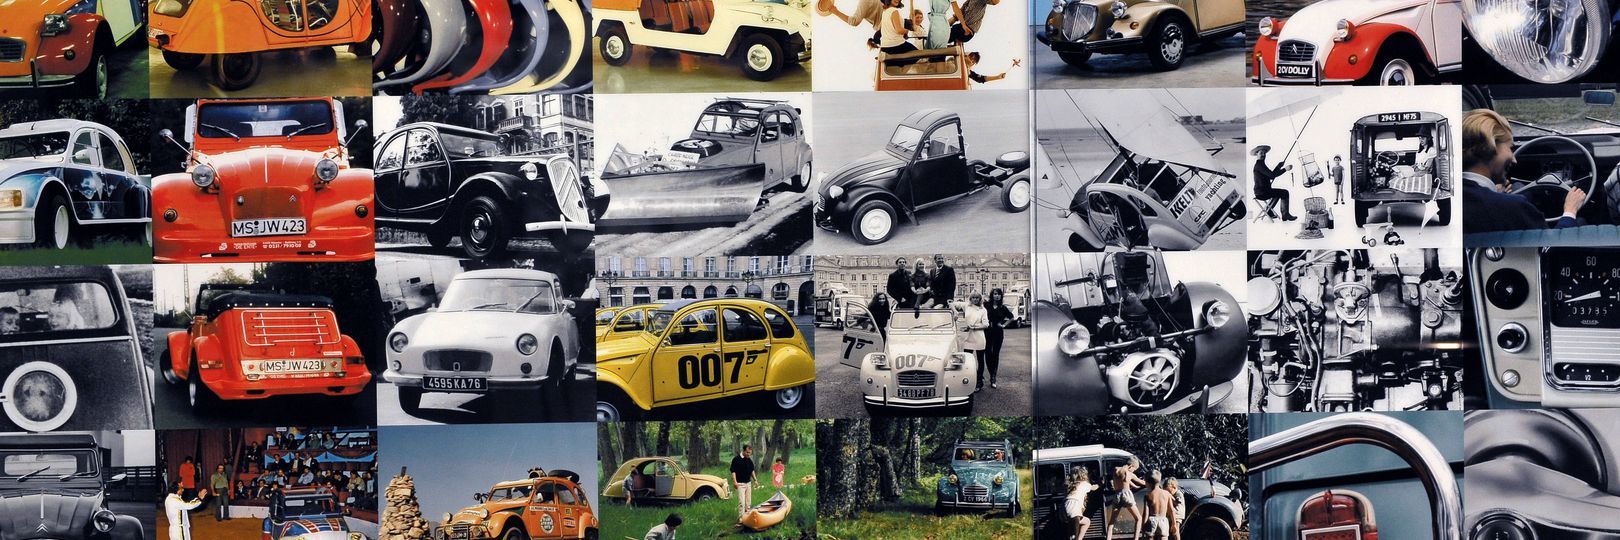 100 años de historia de Citroën (II)